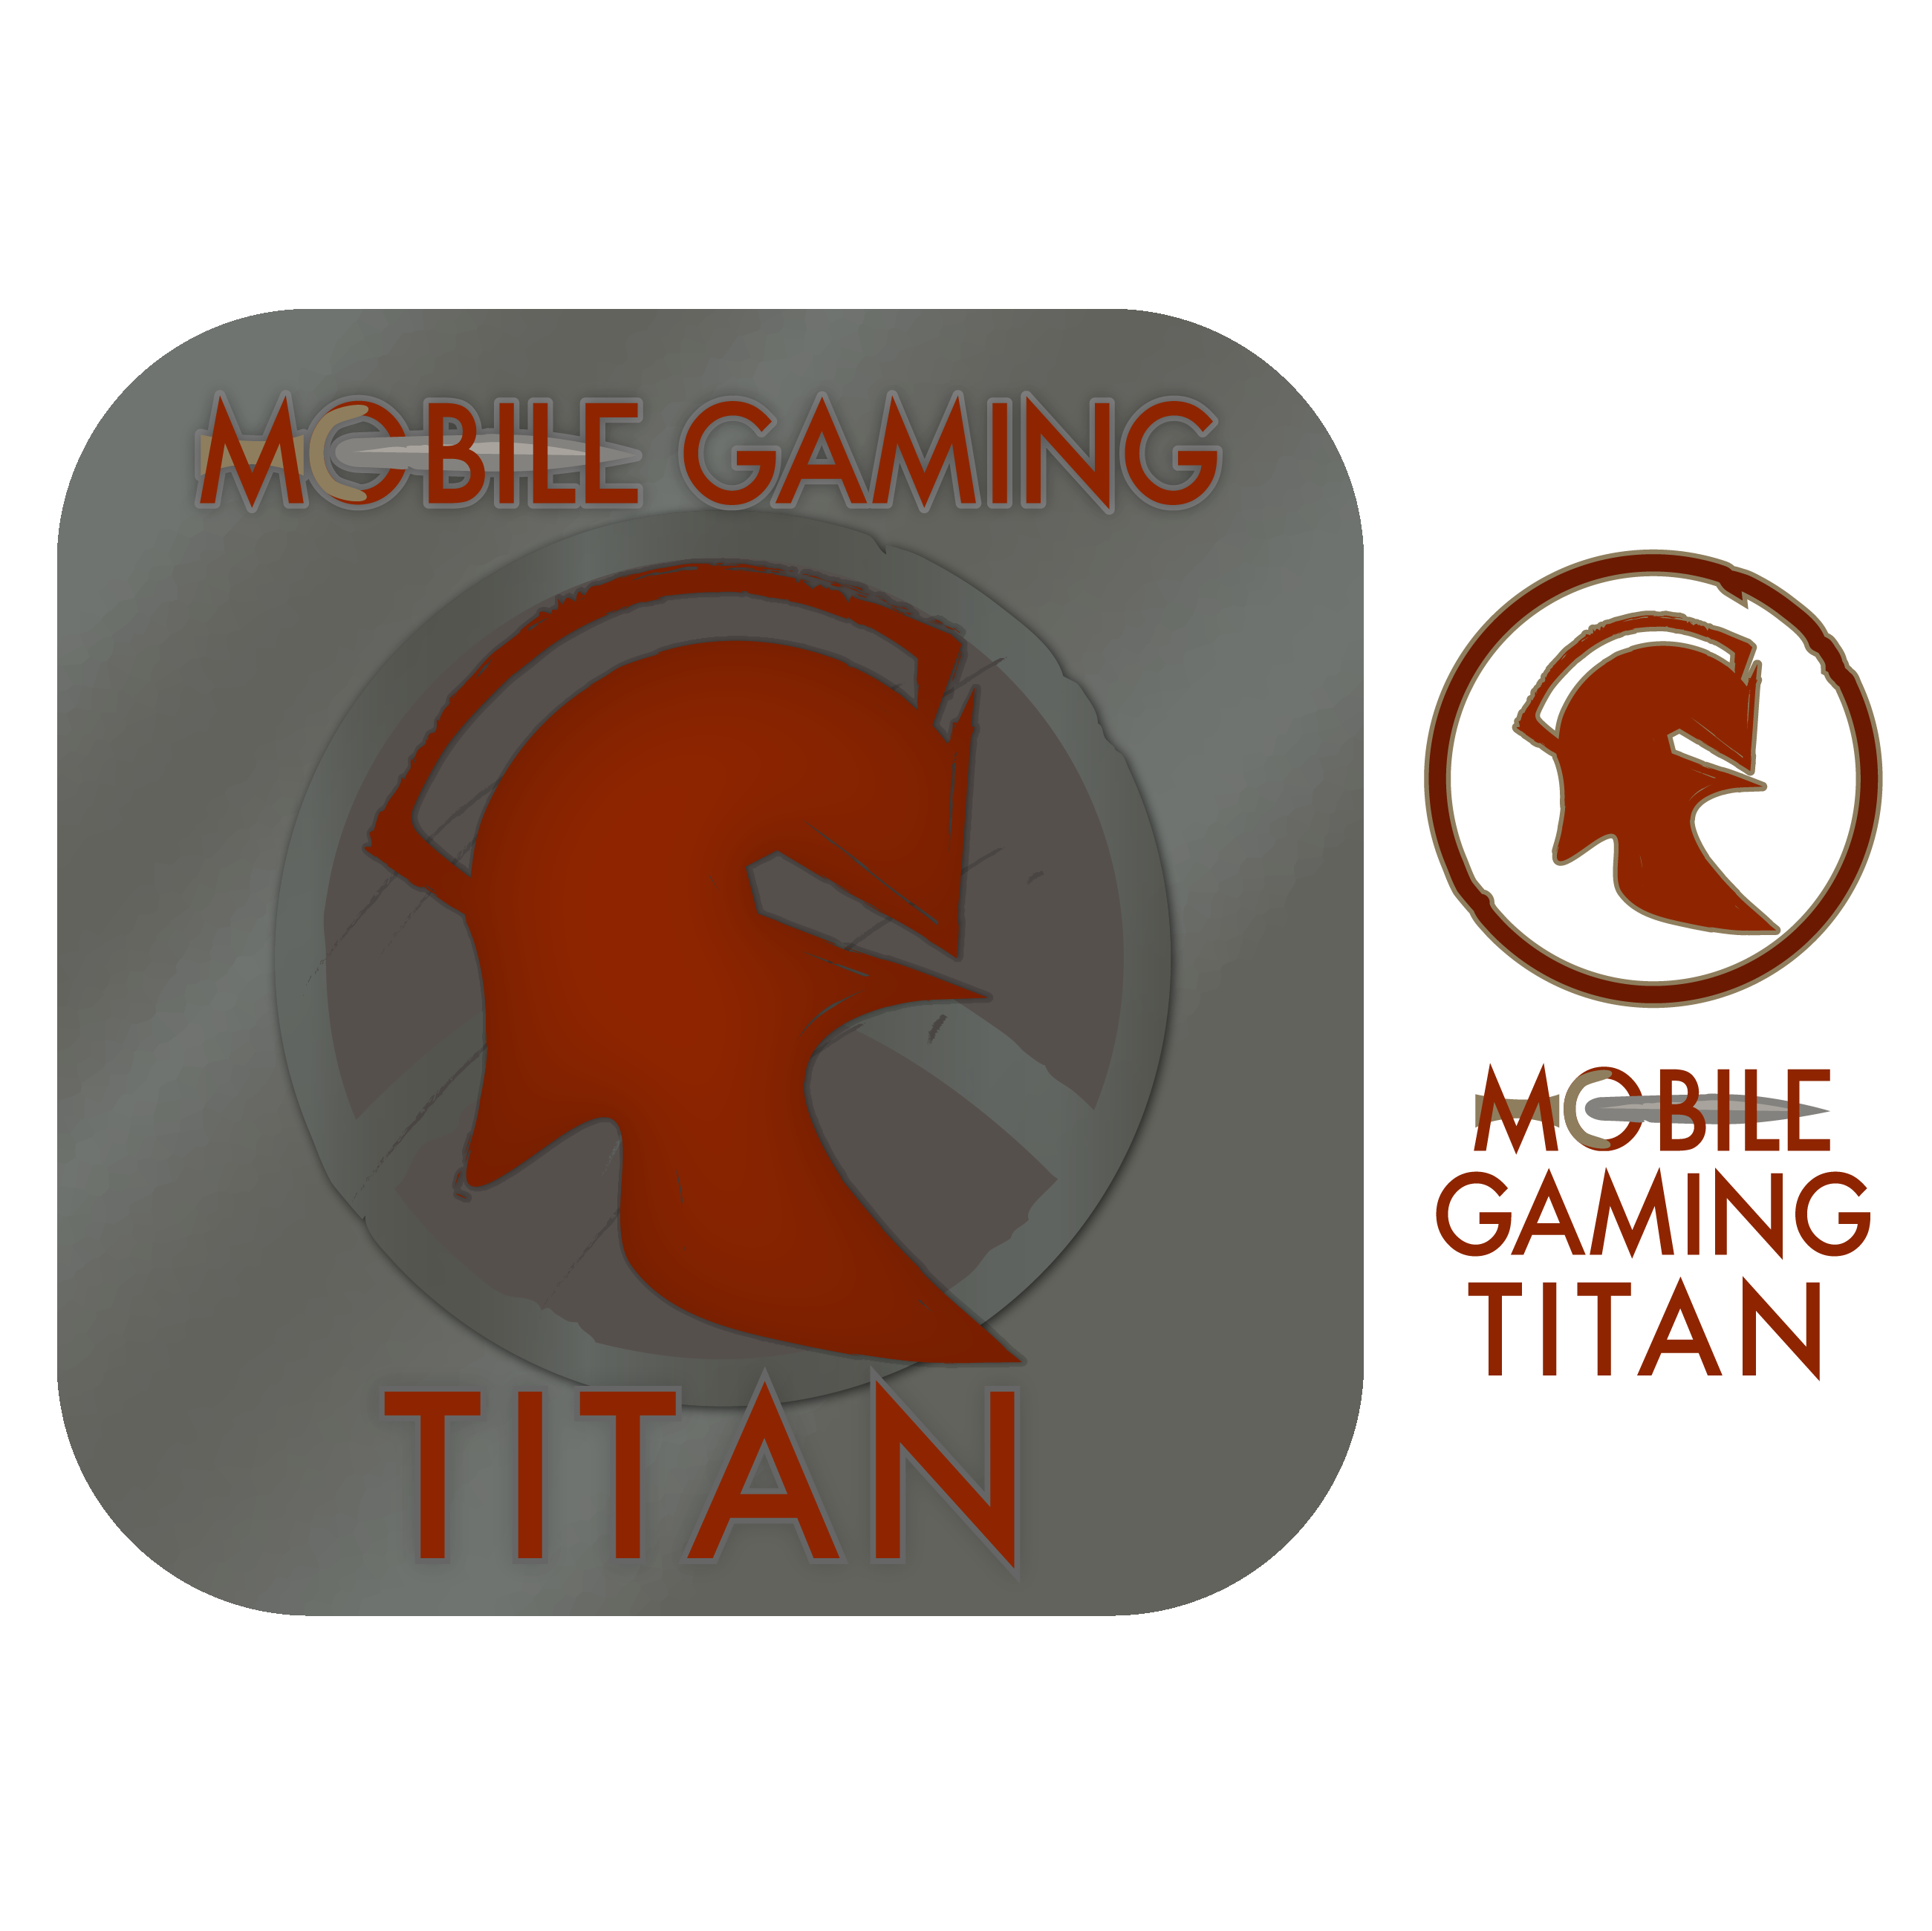 App tile logo of spartan helmet